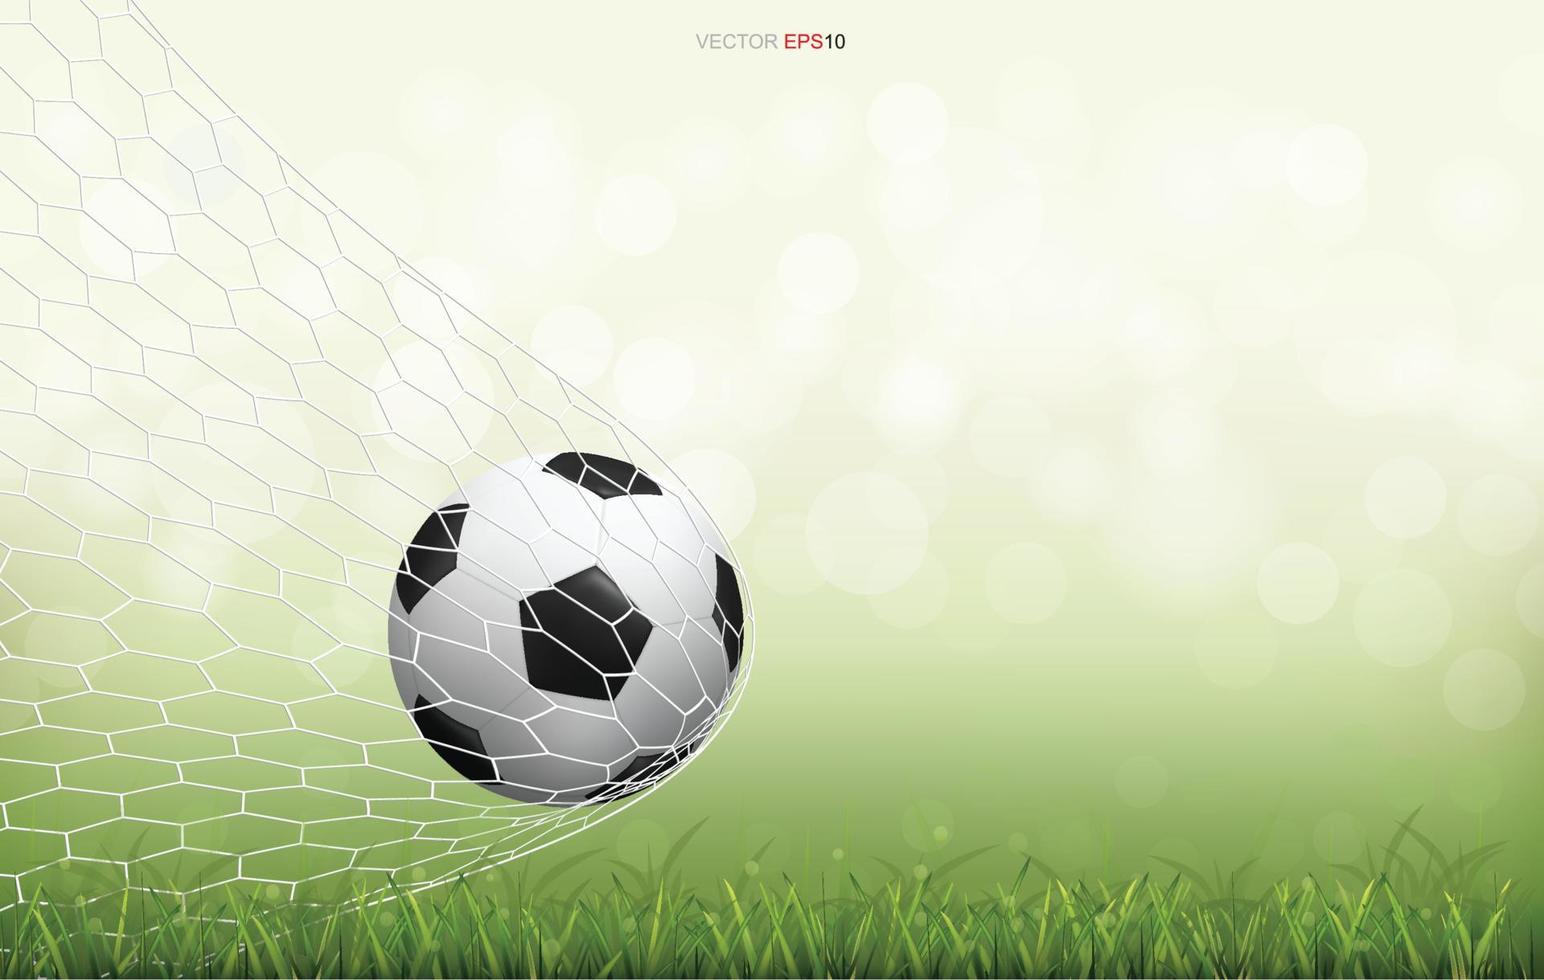 bola de futebol de futebol no campo de grama verde com luz de fundo desfocado bokeh. vetor. vetor